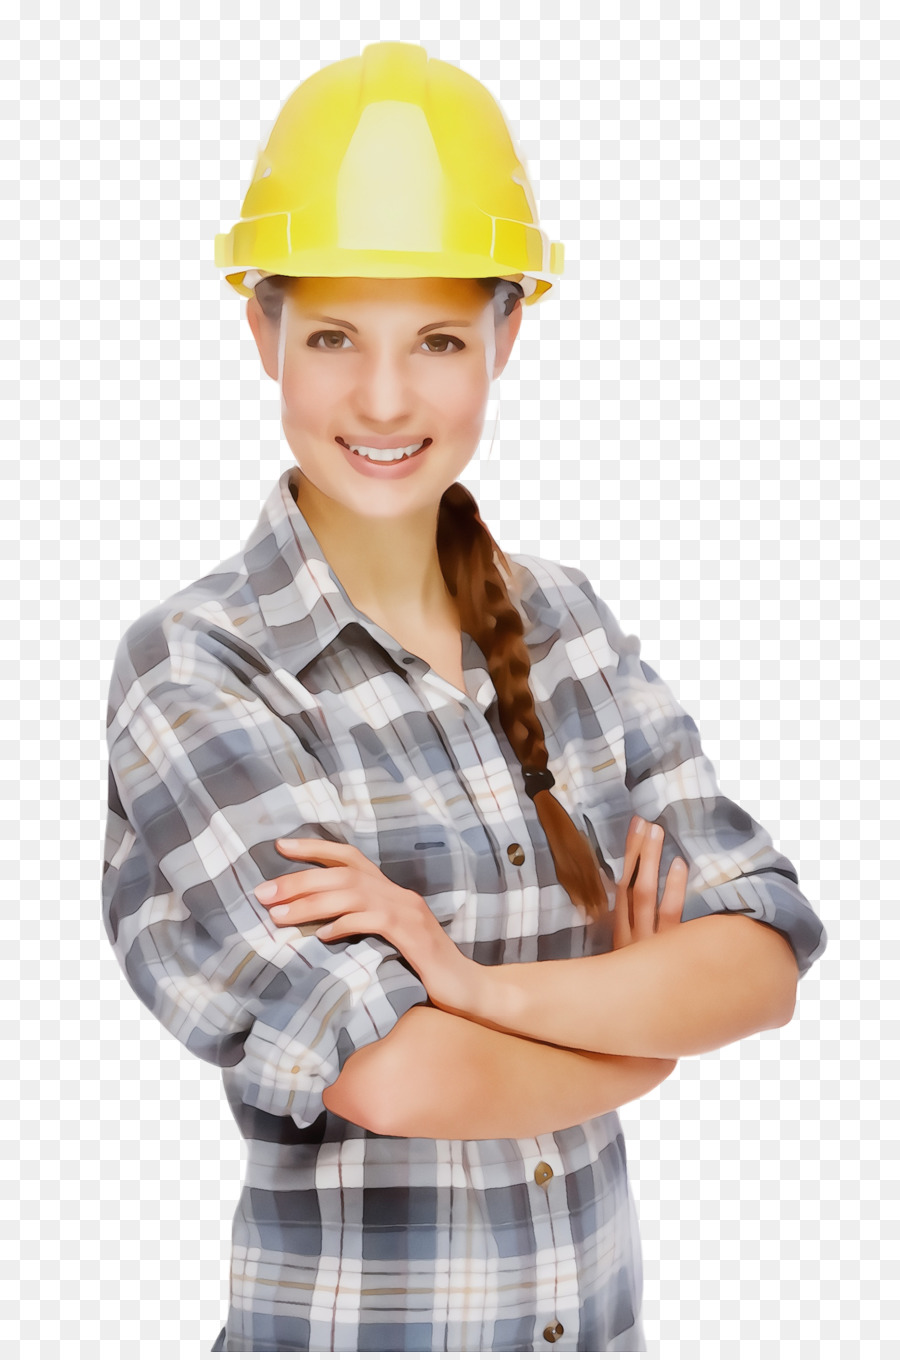 Schutzhelm Bauarbeiter Kleidung persönliche Schutzausrüstung Hut - 